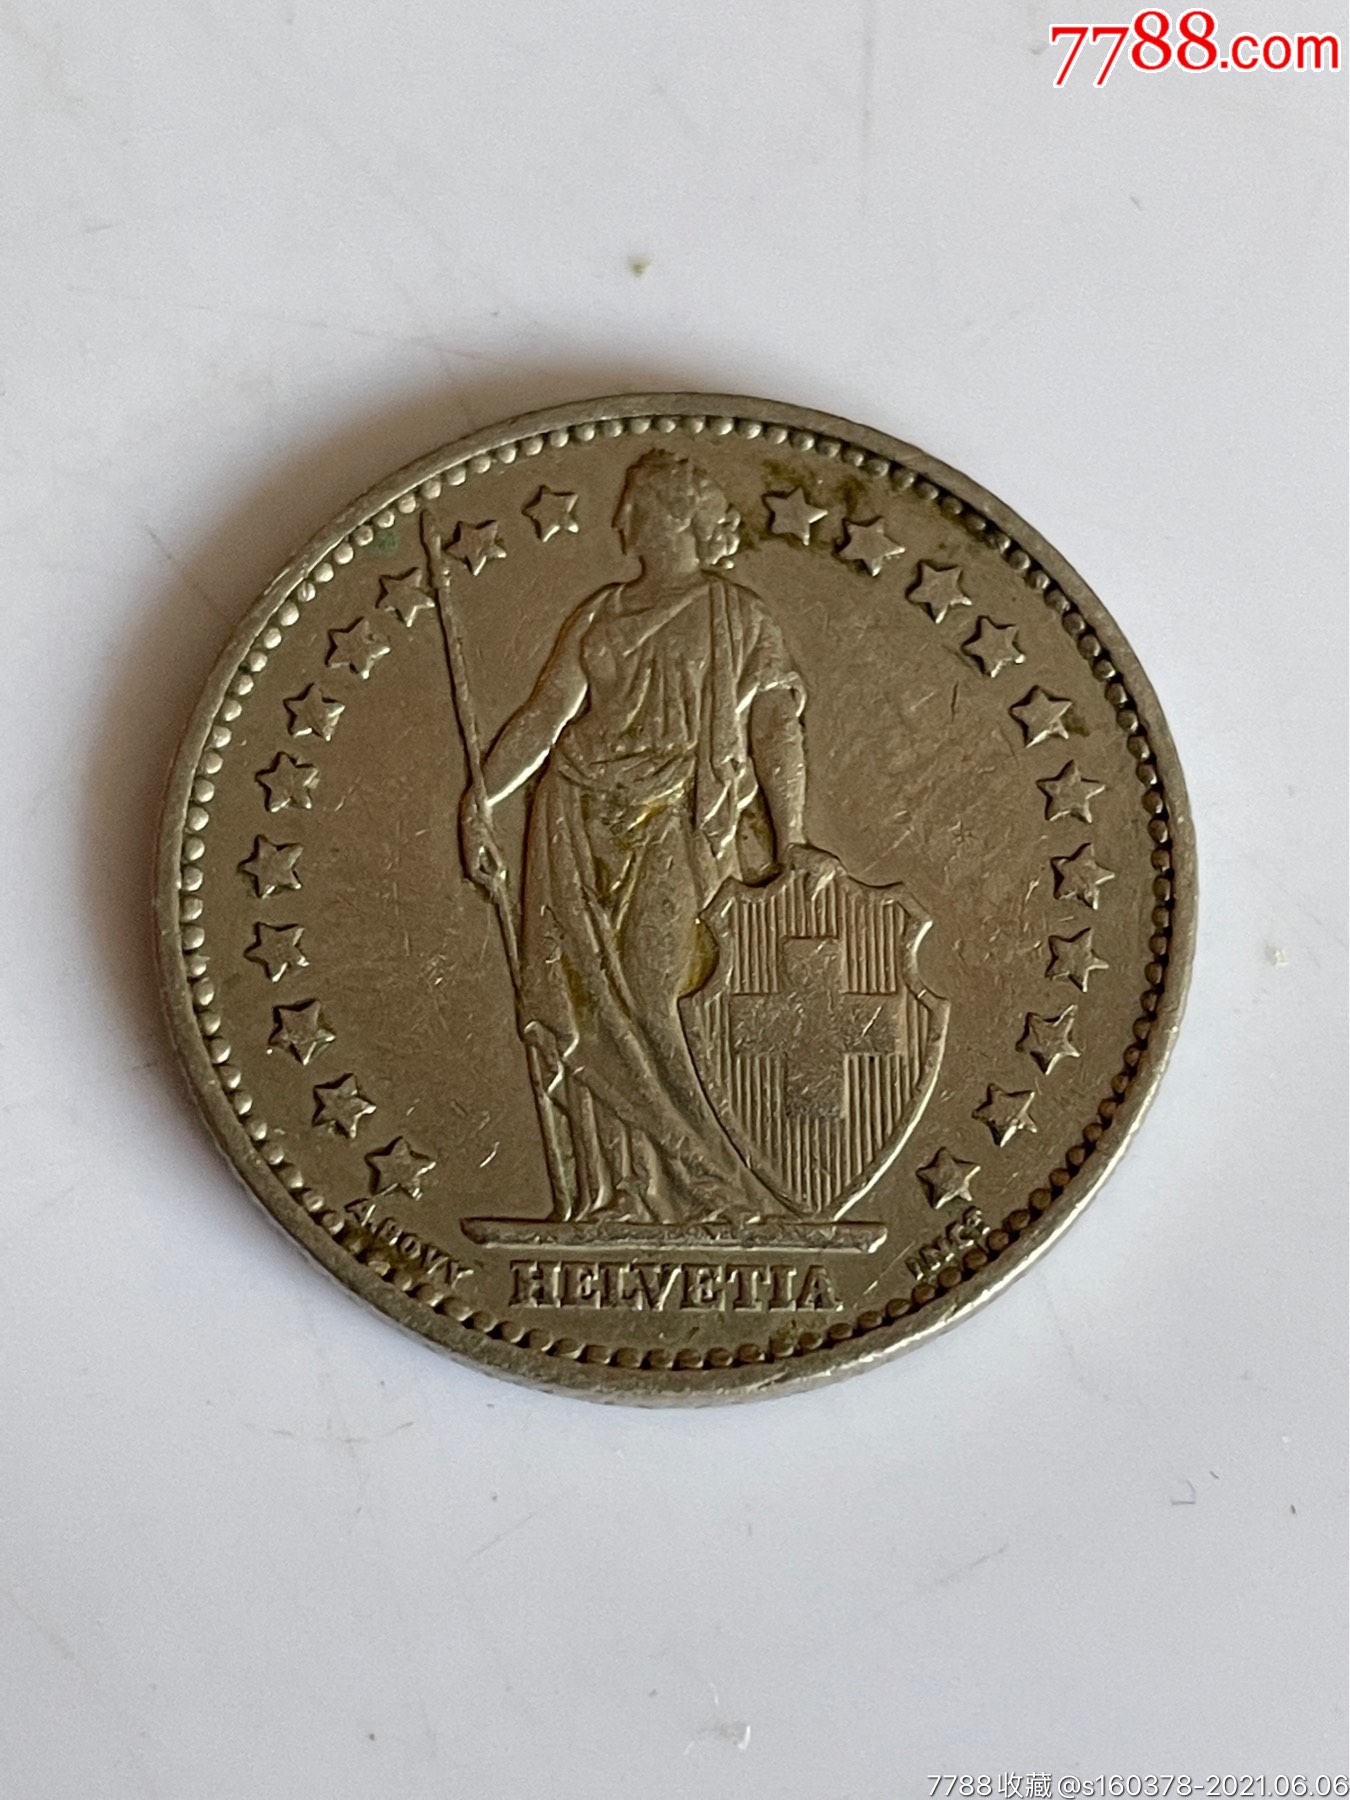 瑞士硬币背景高清摄影大图-千库网